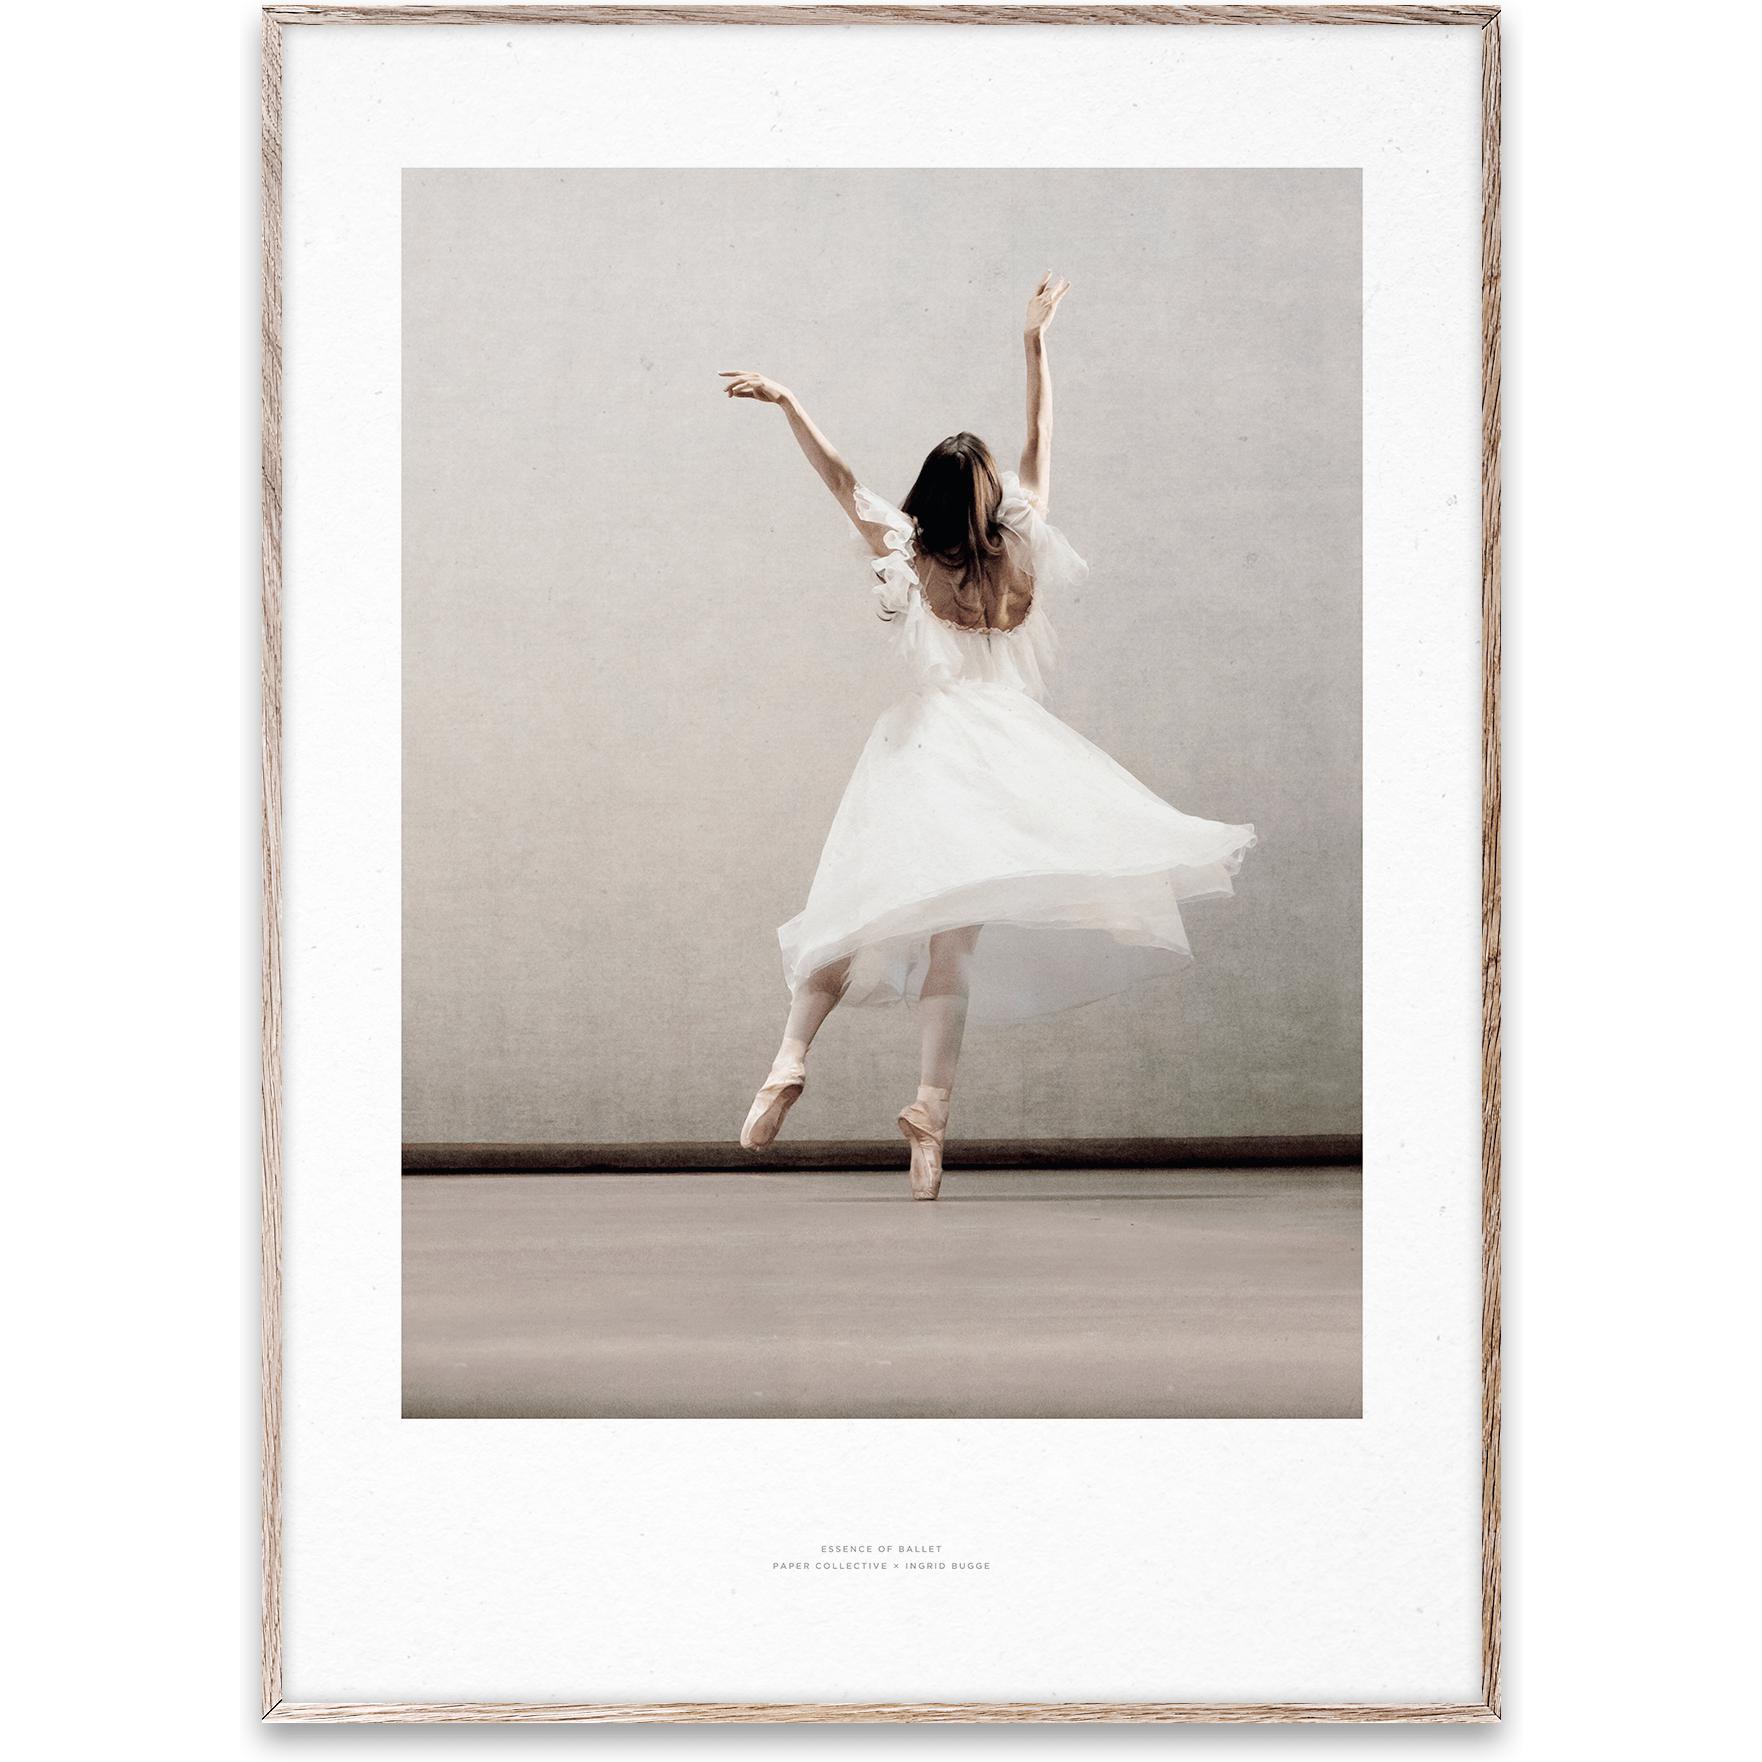 Essenza collettiva di carta del balletto 03 poster, 30x40 cm